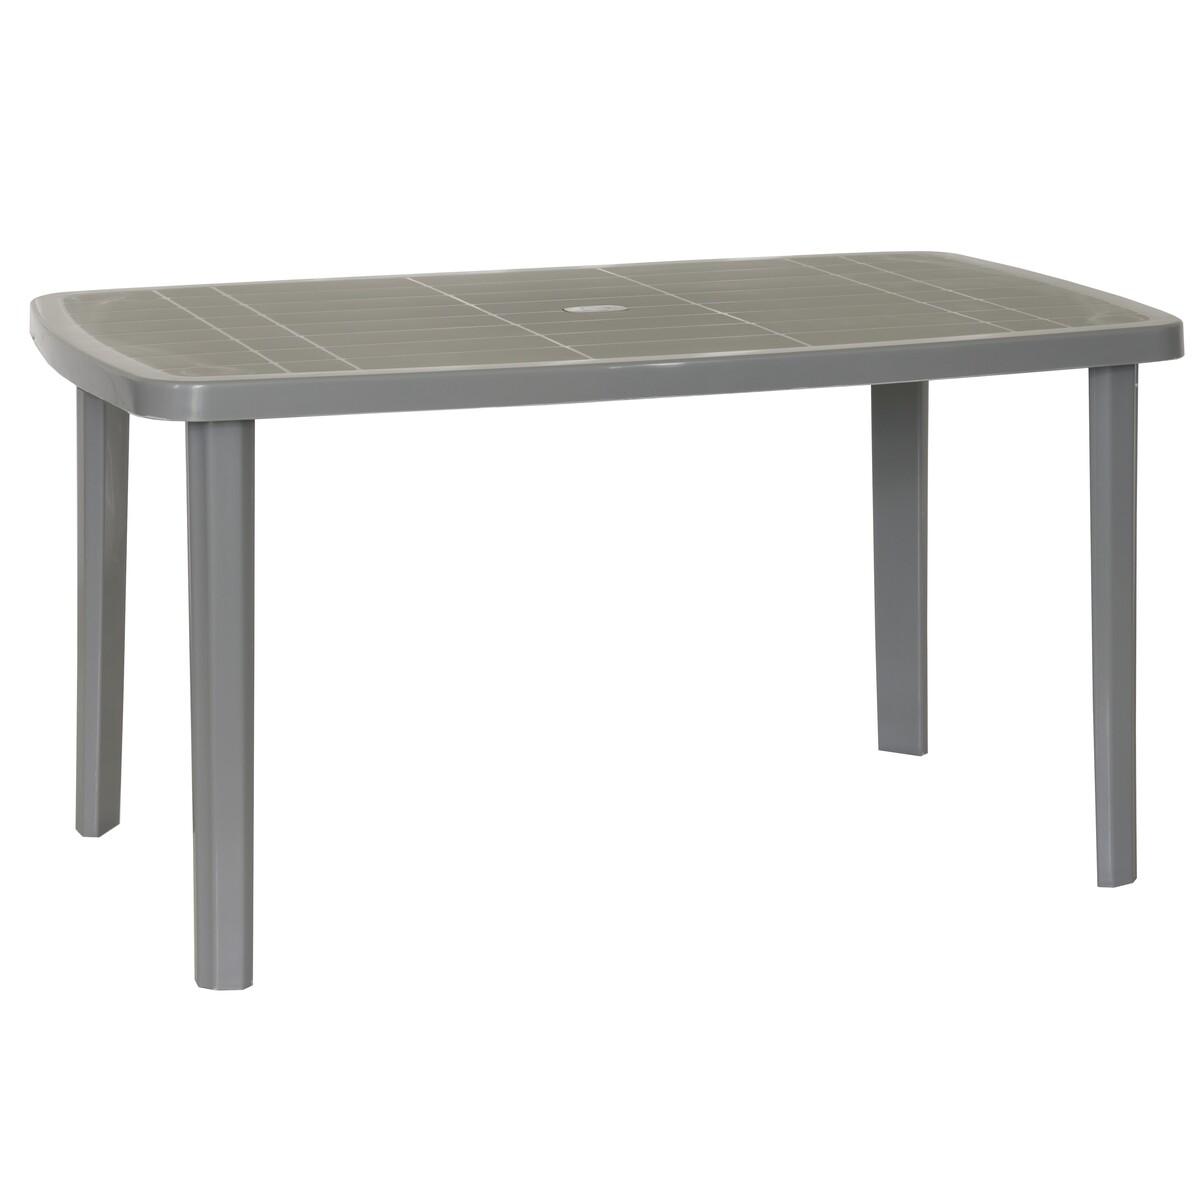 Table rectangulaire - 137 x 85 X H 72 cm - Gris